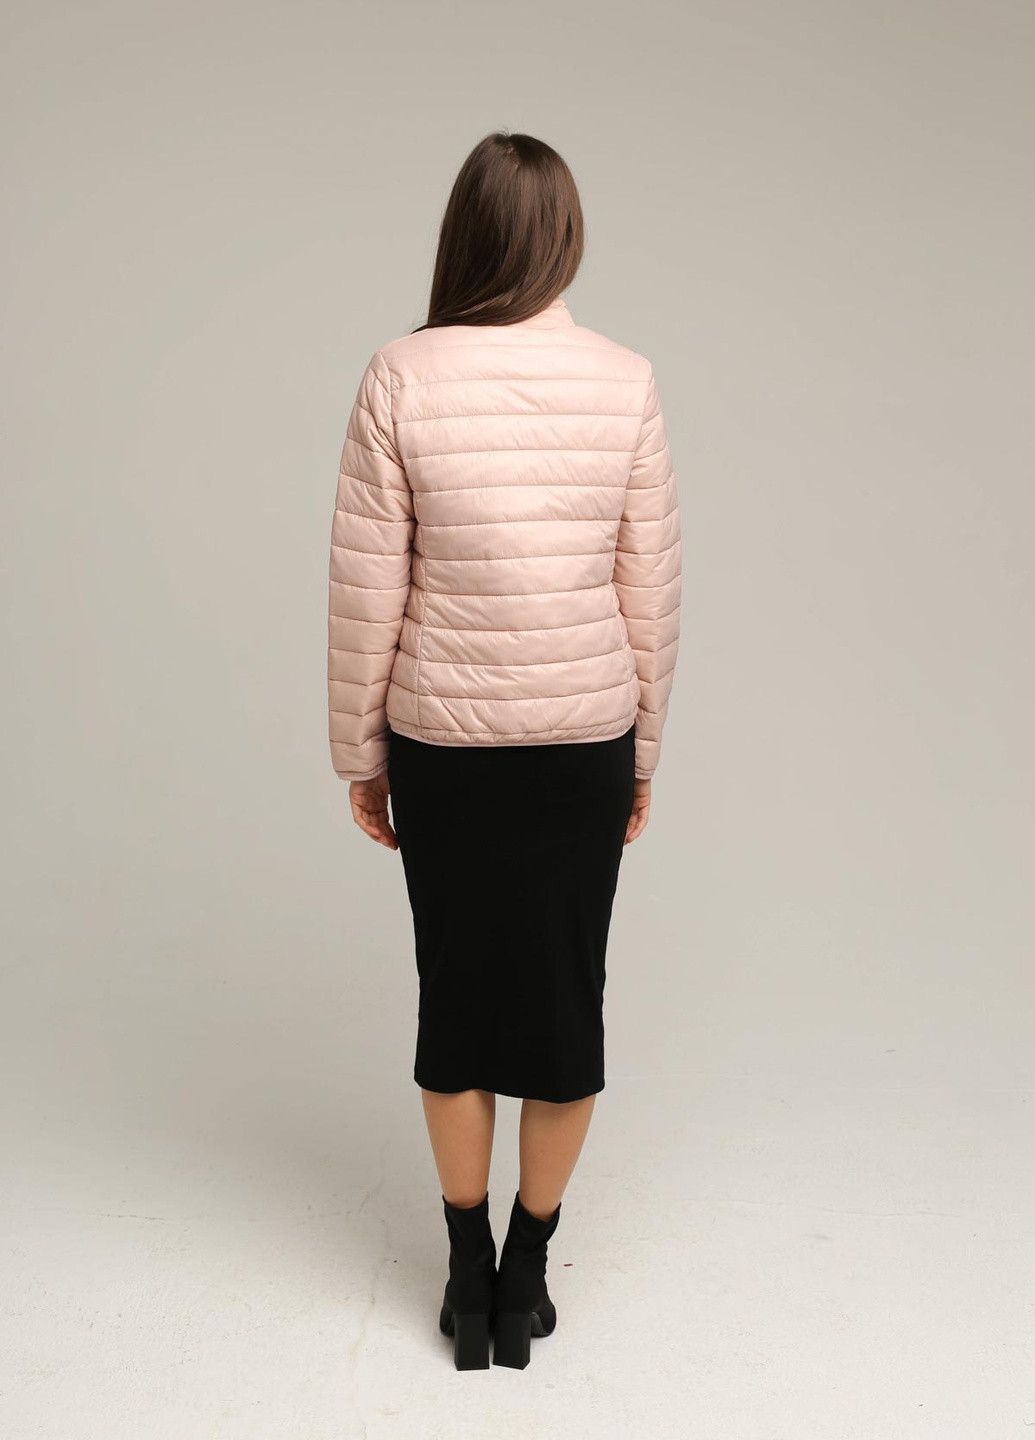 Розовая демисезонная куртка модель 7278 Ziai